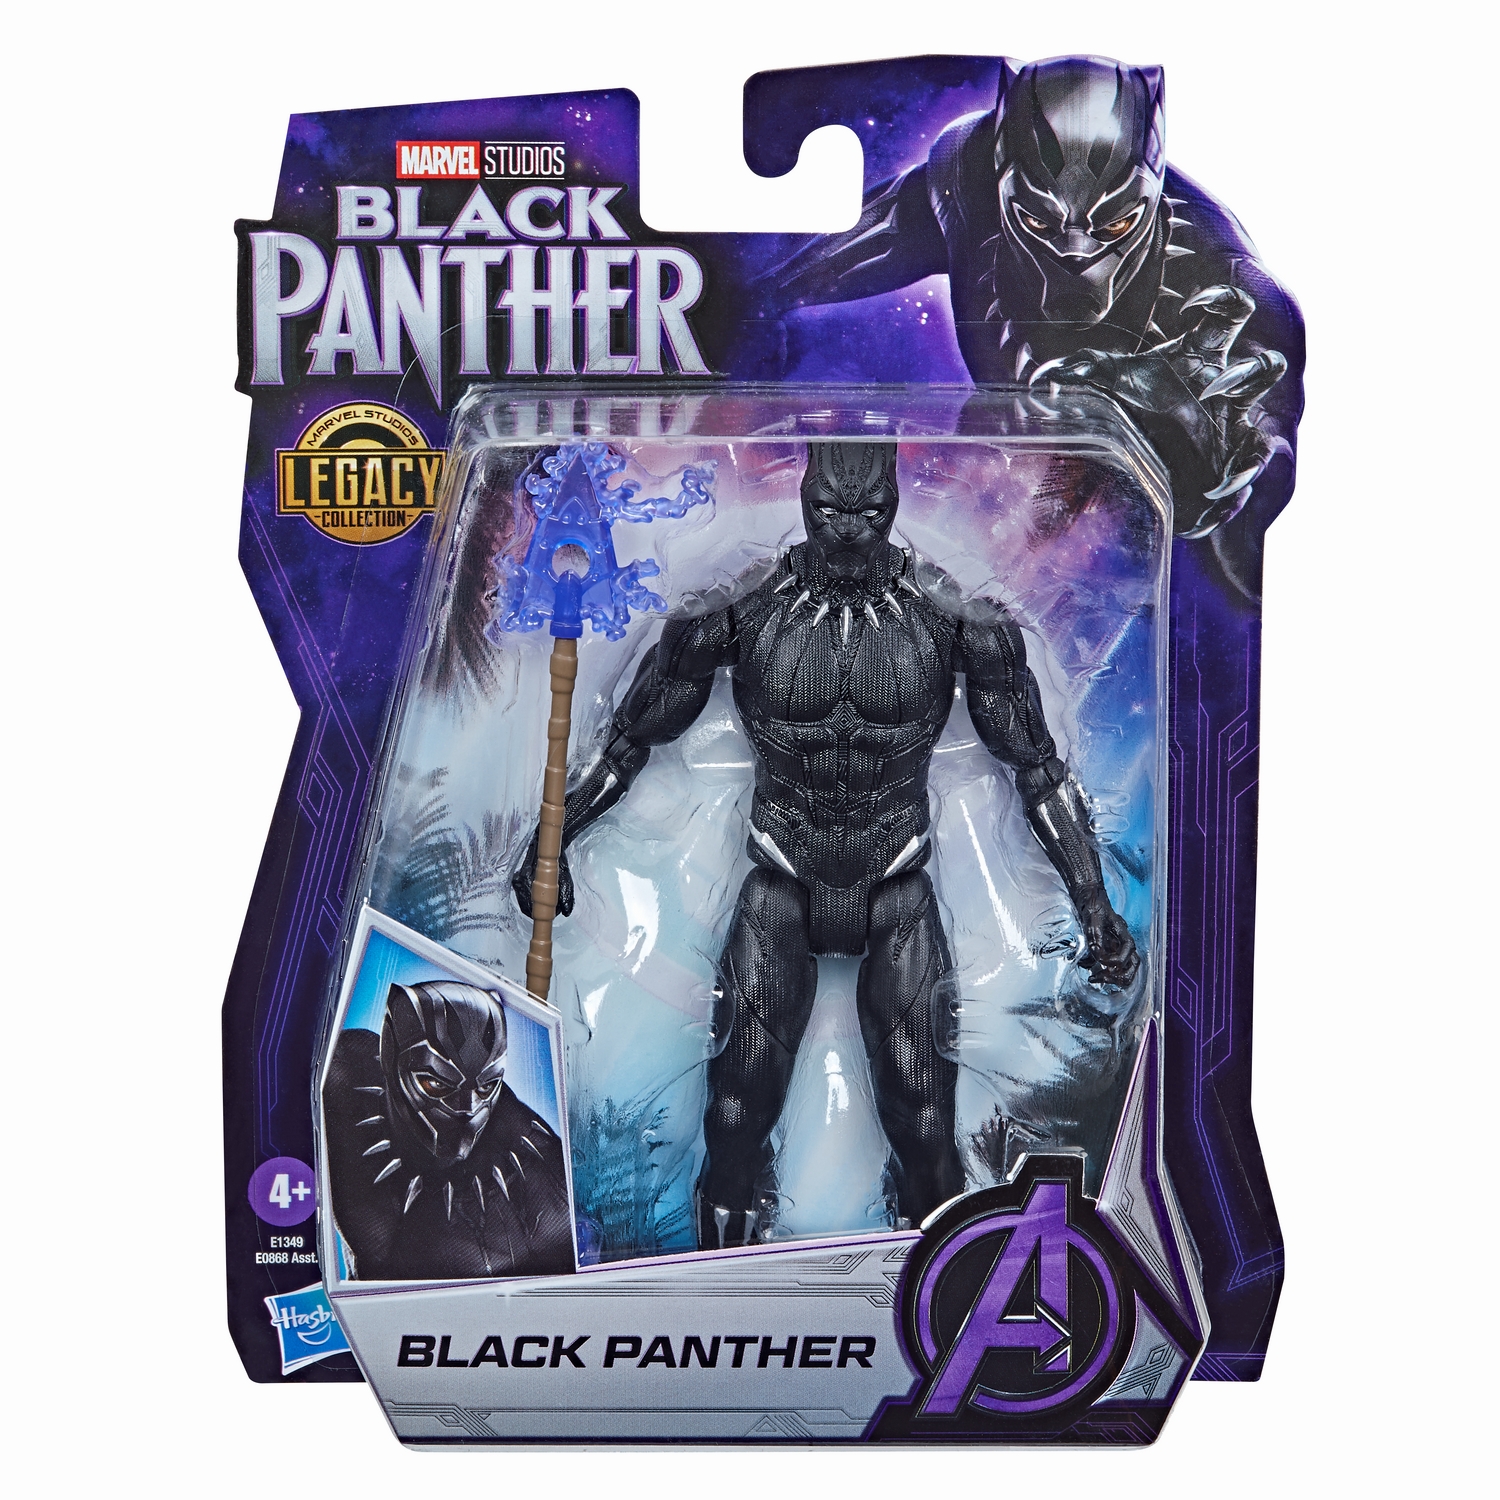 Marvel Black Panther Marvel Studios Legacy Collection Black Panther - 2.jpg